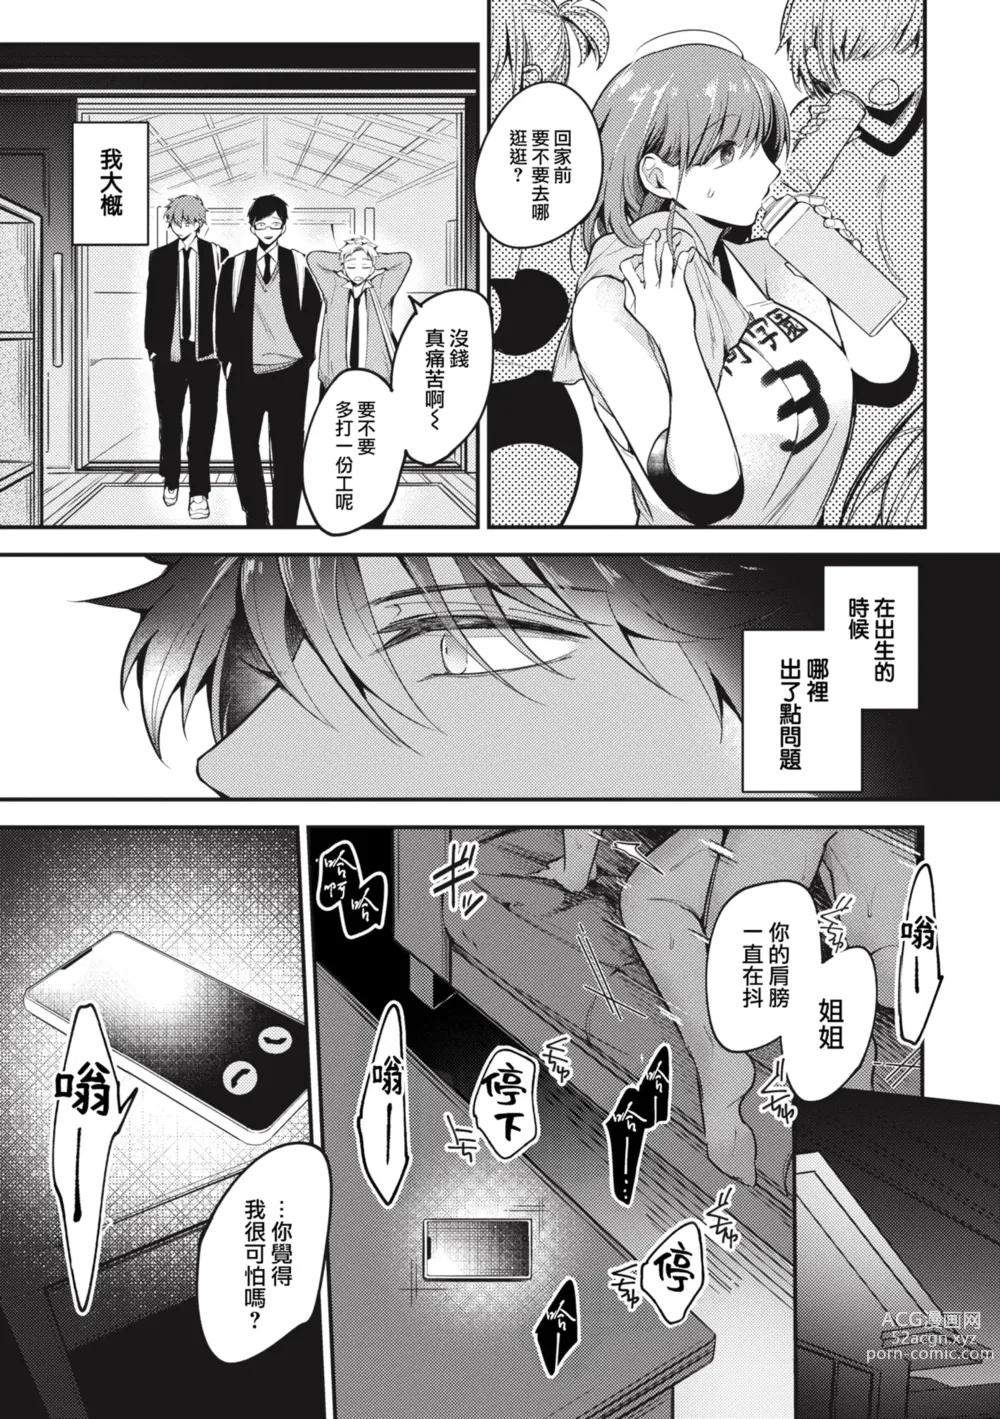 Page 4 of manga Tairo naki netsu + Gojitsutan